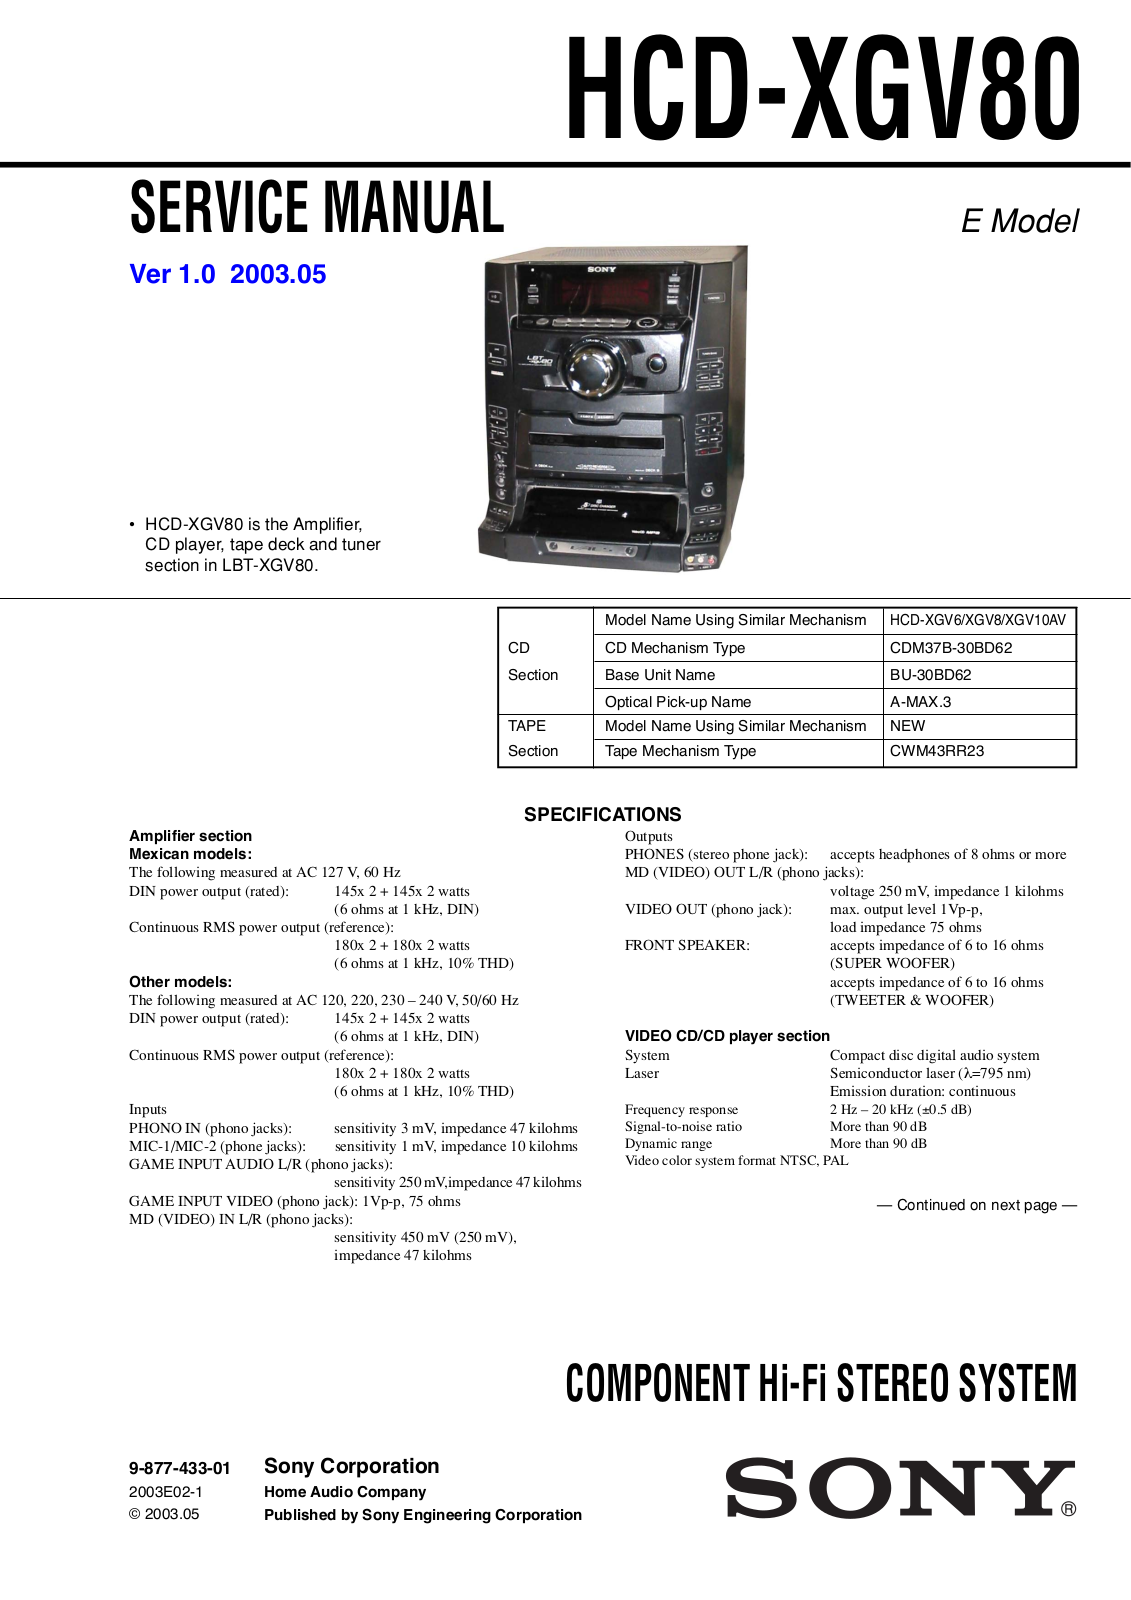 SONY HCD-XGV80 Service Manual